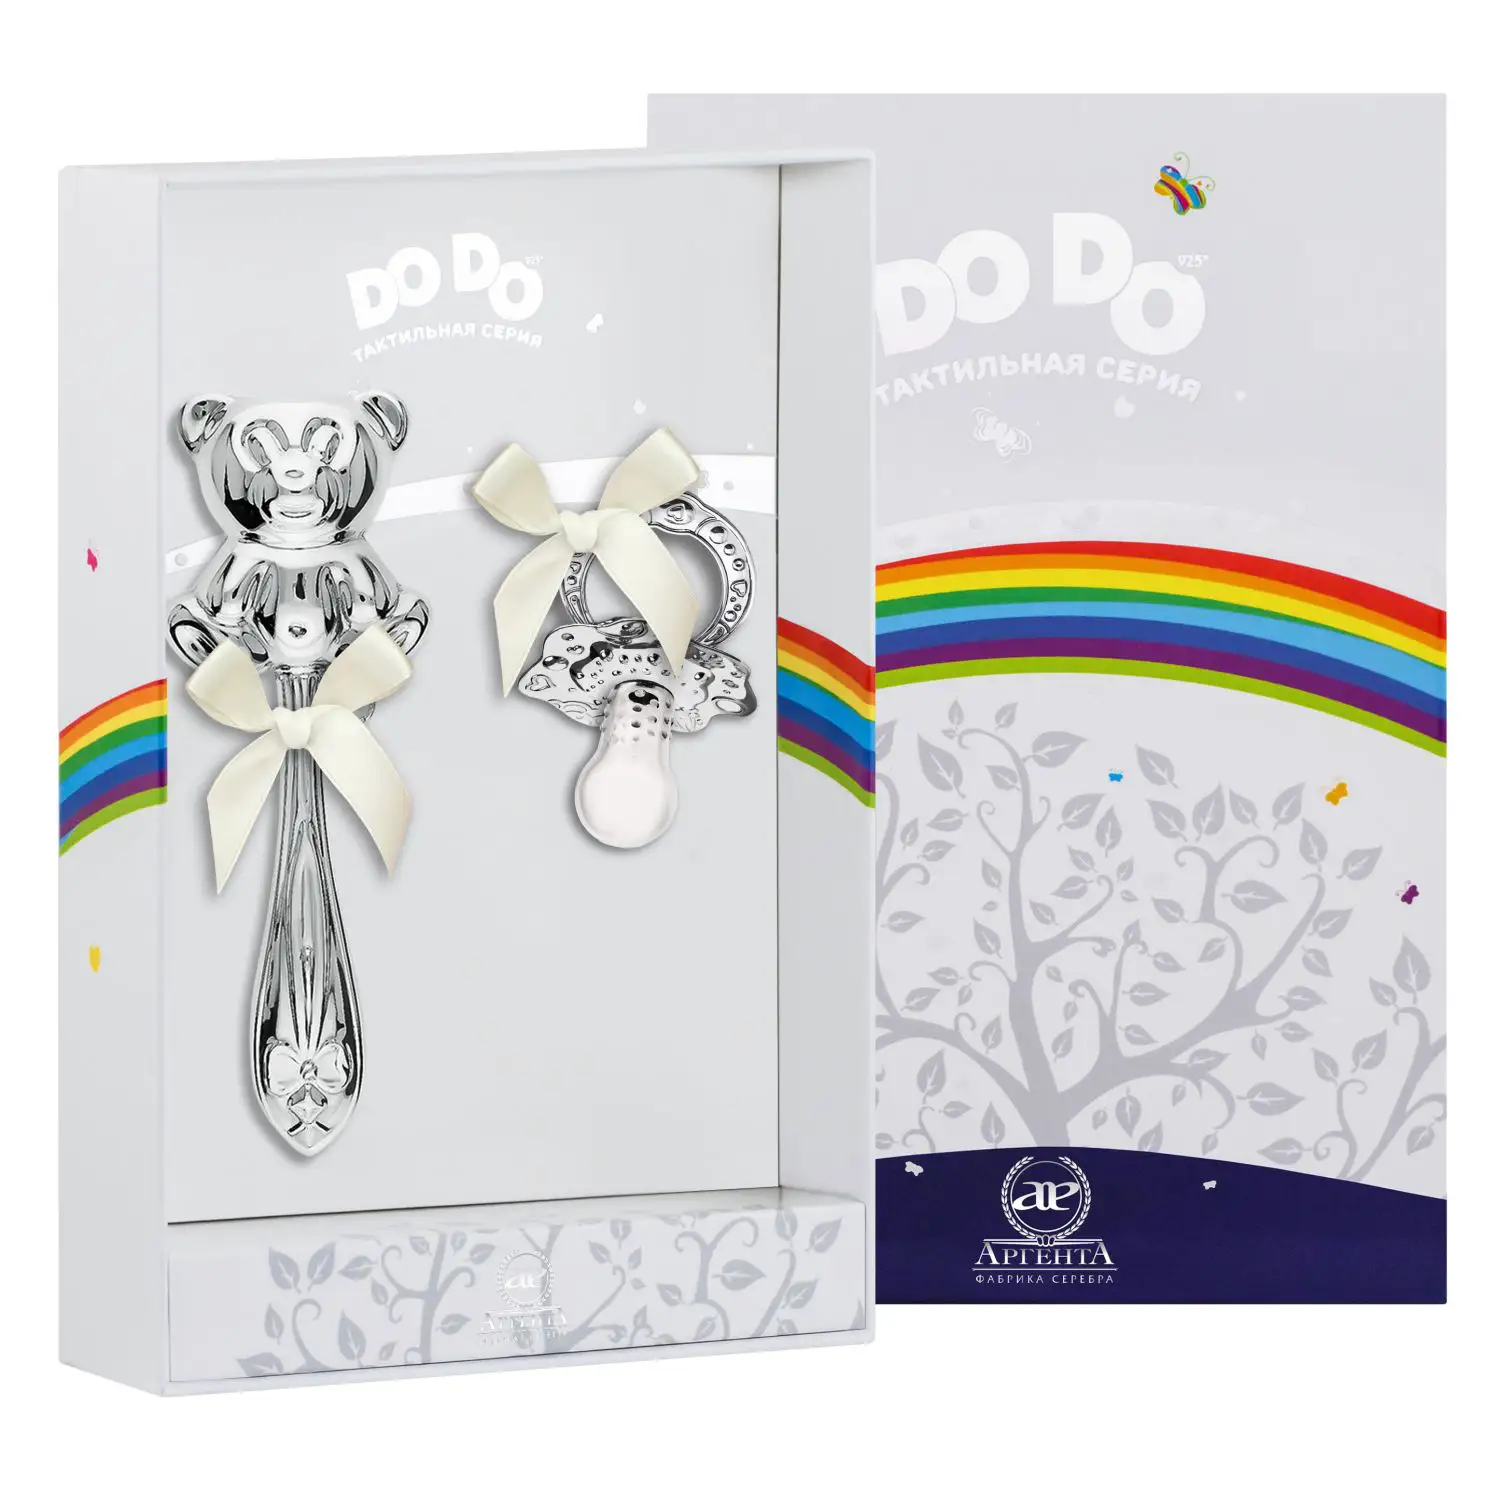 Набор для малышей DODO Медведь: погремушка и сувенир-пустышка (Серебро 925) набор для малышей dodo ангел погремушка и сувенир пустышка серебро 925